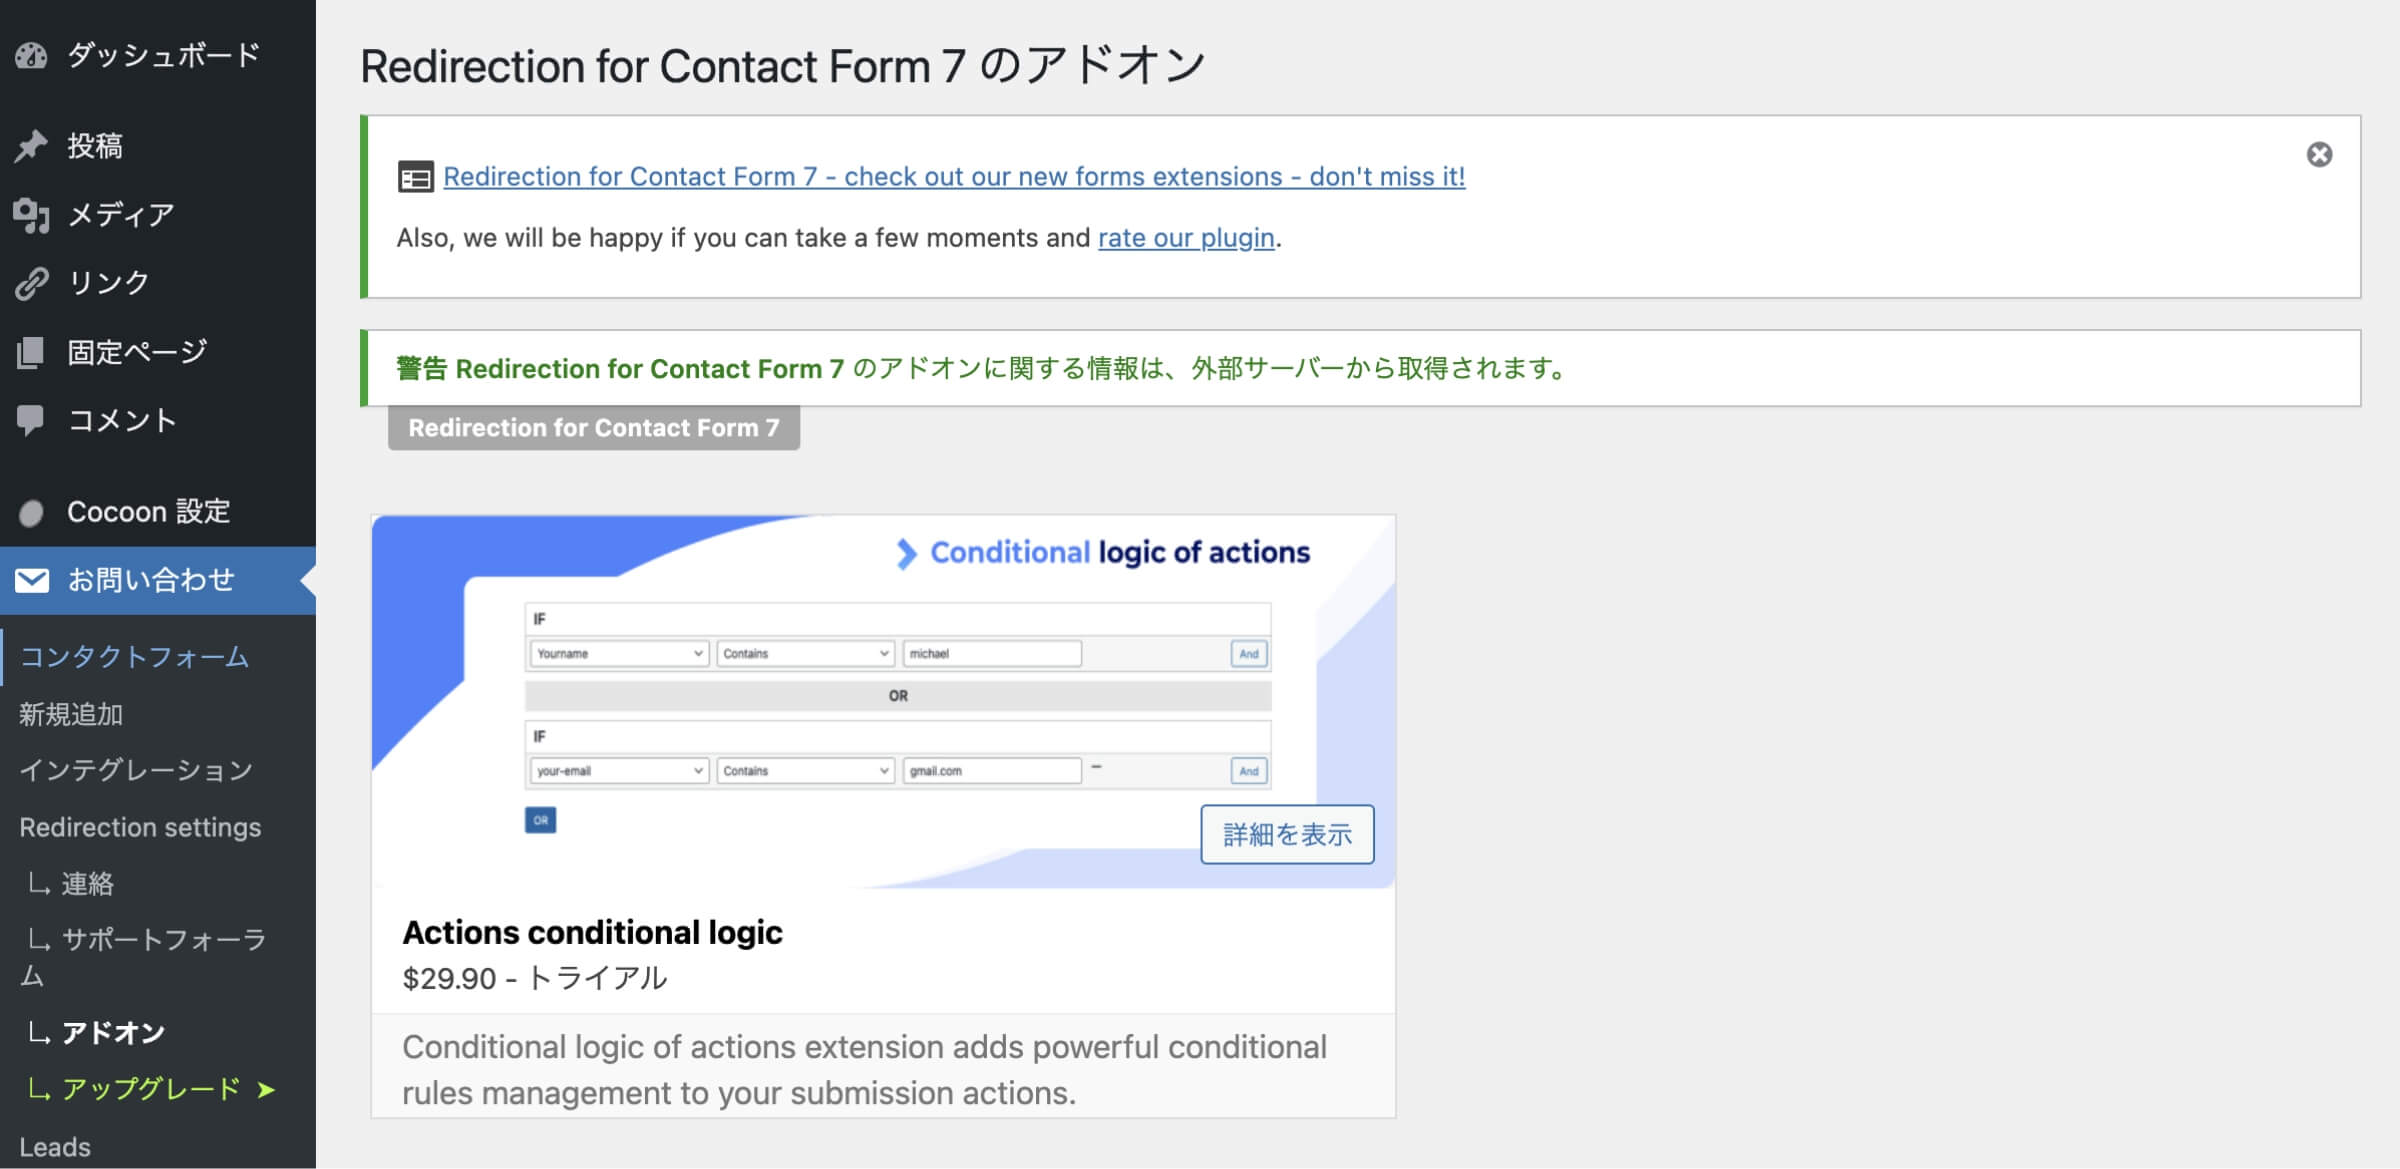 スキップボタンをクリック後に、「Redirection for Contact Form 7のアドオン」画面が表示されます。